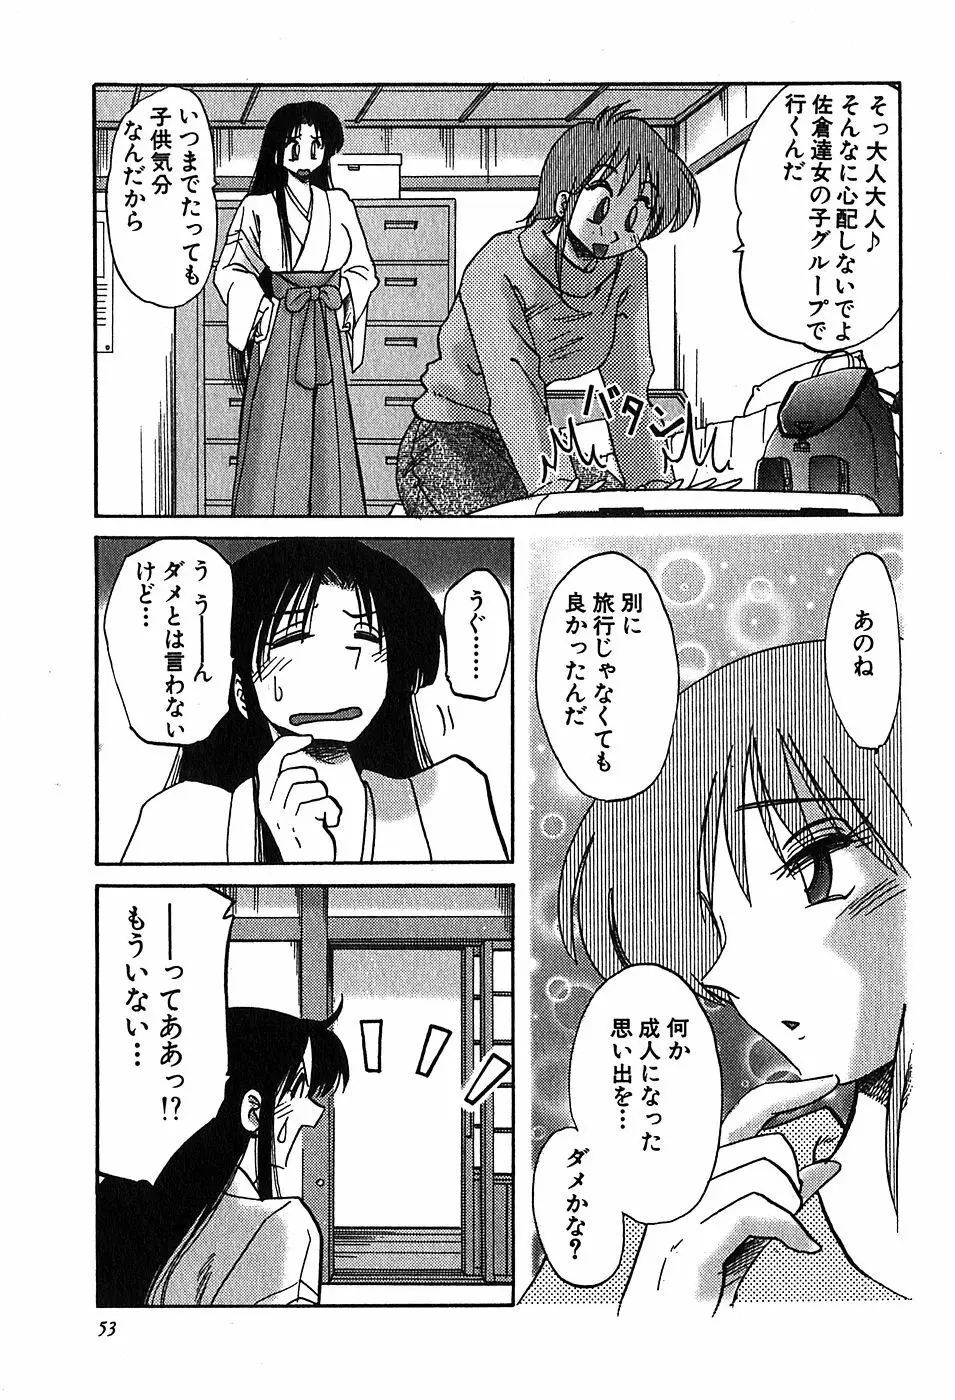 Kasumi_No_Mori Vol.2 52ページ